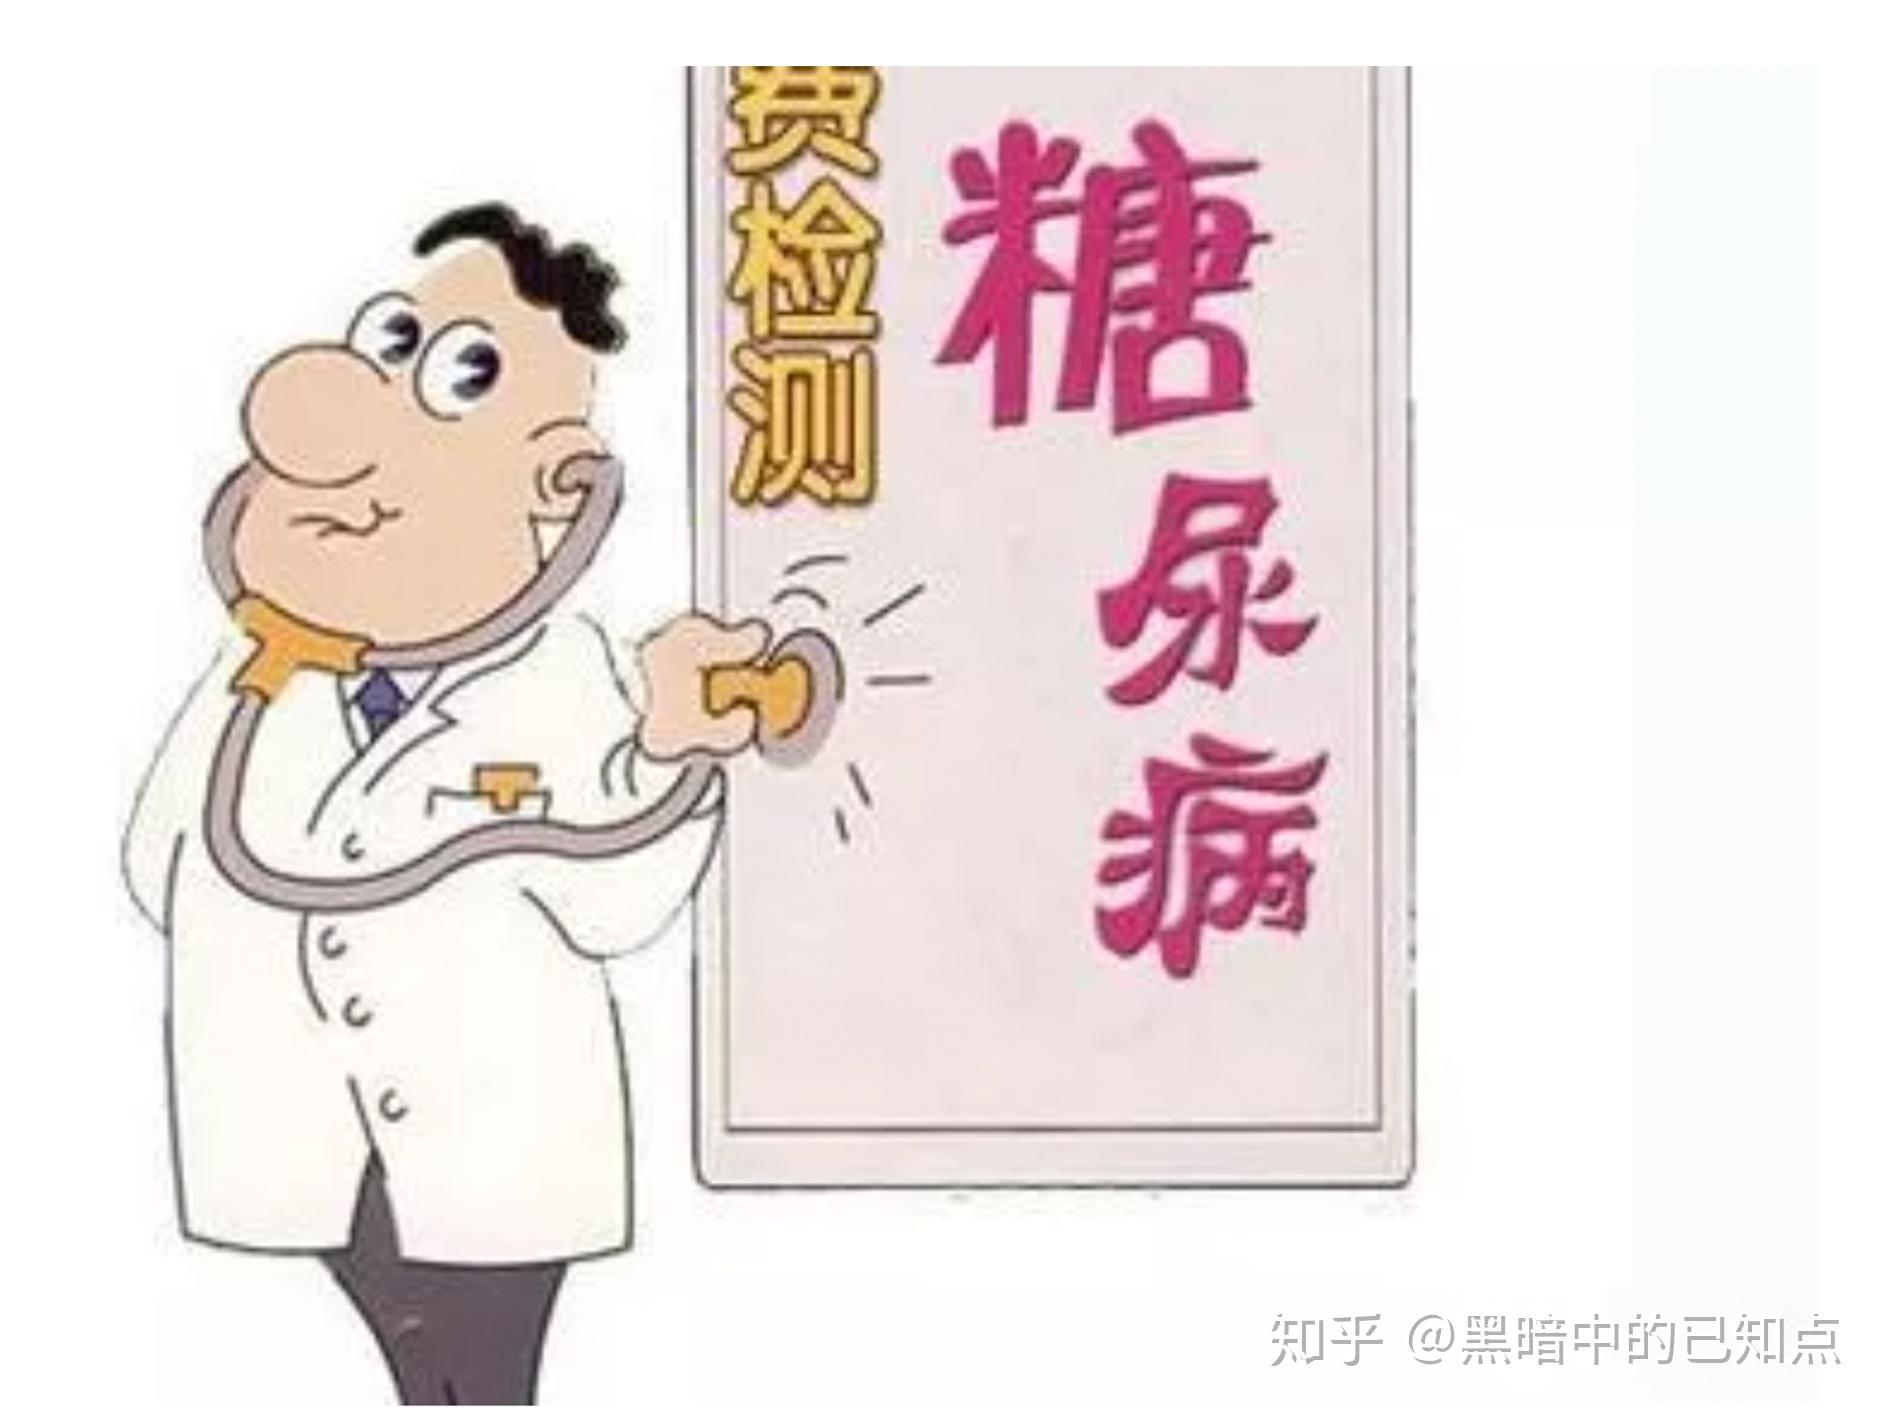 中国糖尿病高达1.14 亿，3步教你远离它|生活方式|糖尿病|胰岛素|血糖|饮食|运动|-健康界